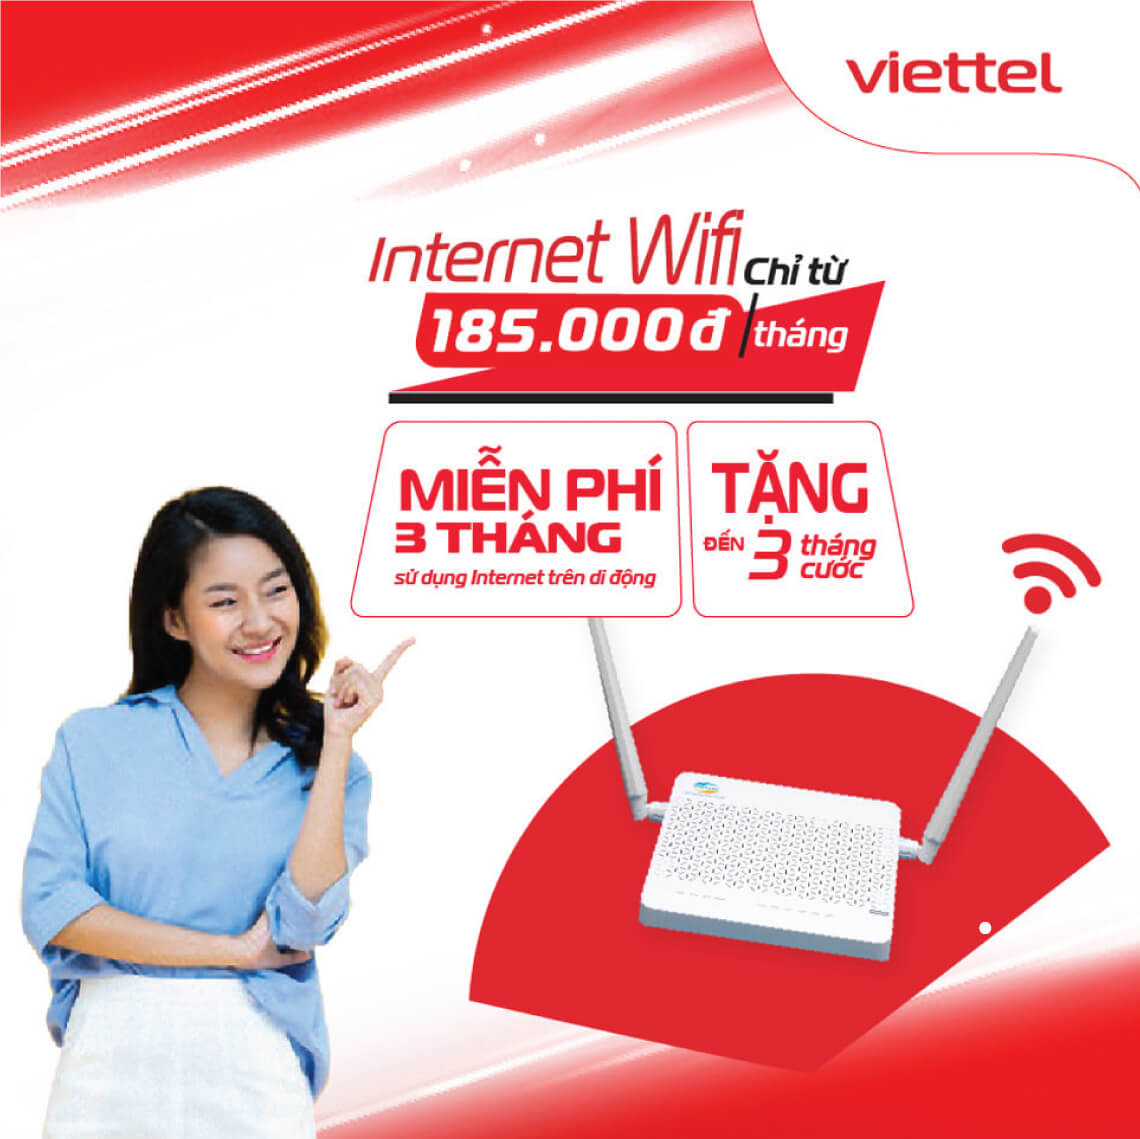 Khuyến mãi lắp mạng Viettel Internet wifi cáp quang tại Thường Tín, Hà Nội 